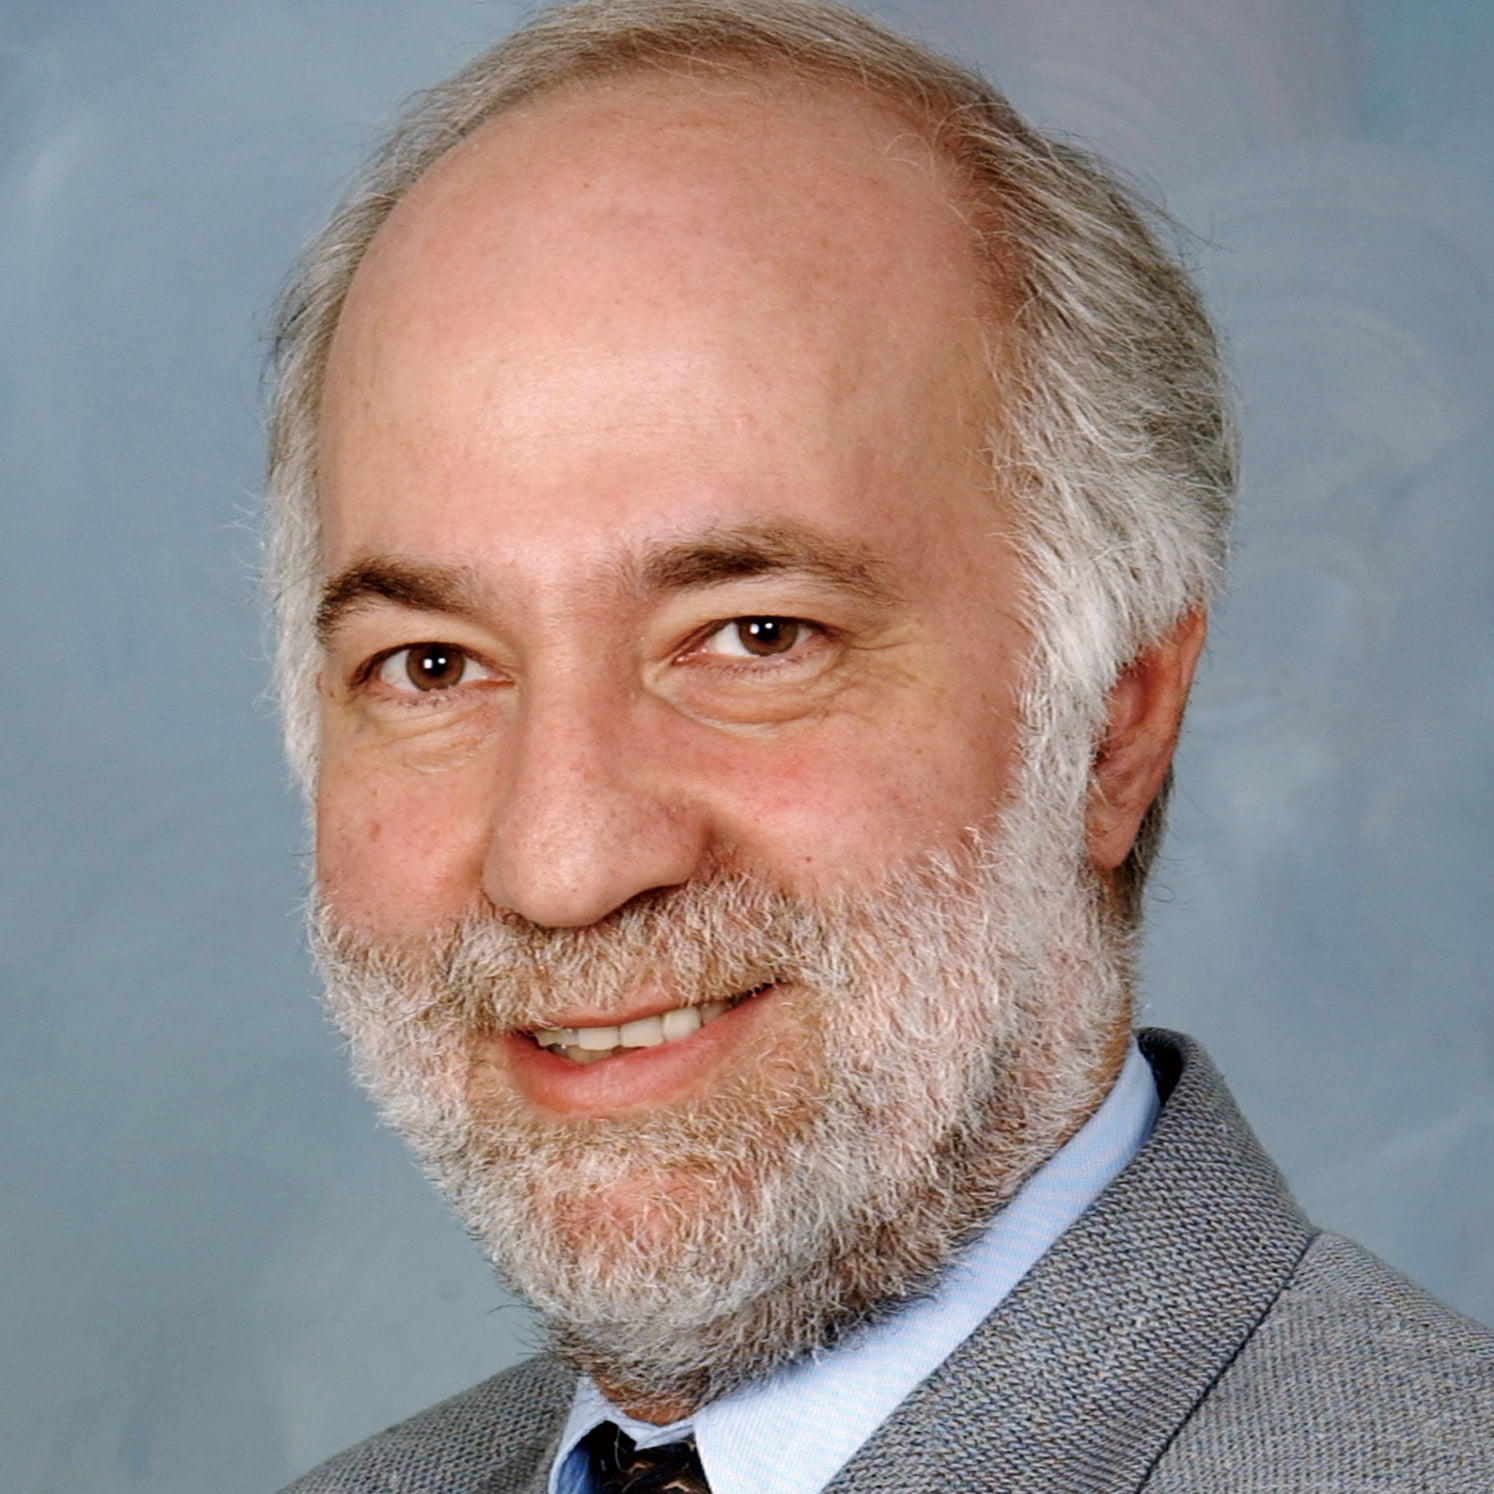 Professor Daniel Sperling